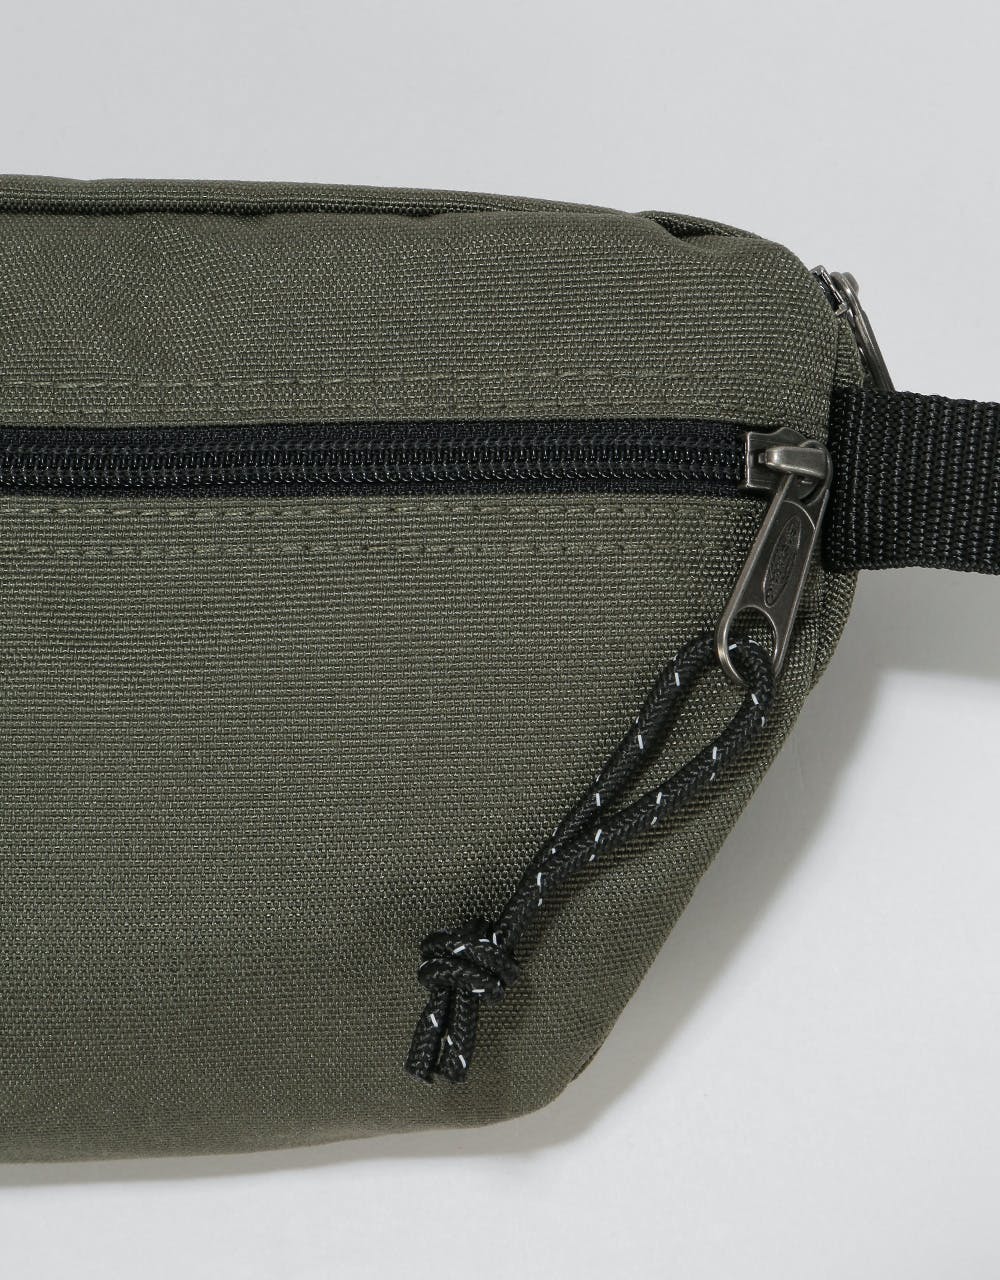 Eastpak Springer Cross Body Bag - Jungle Khaki